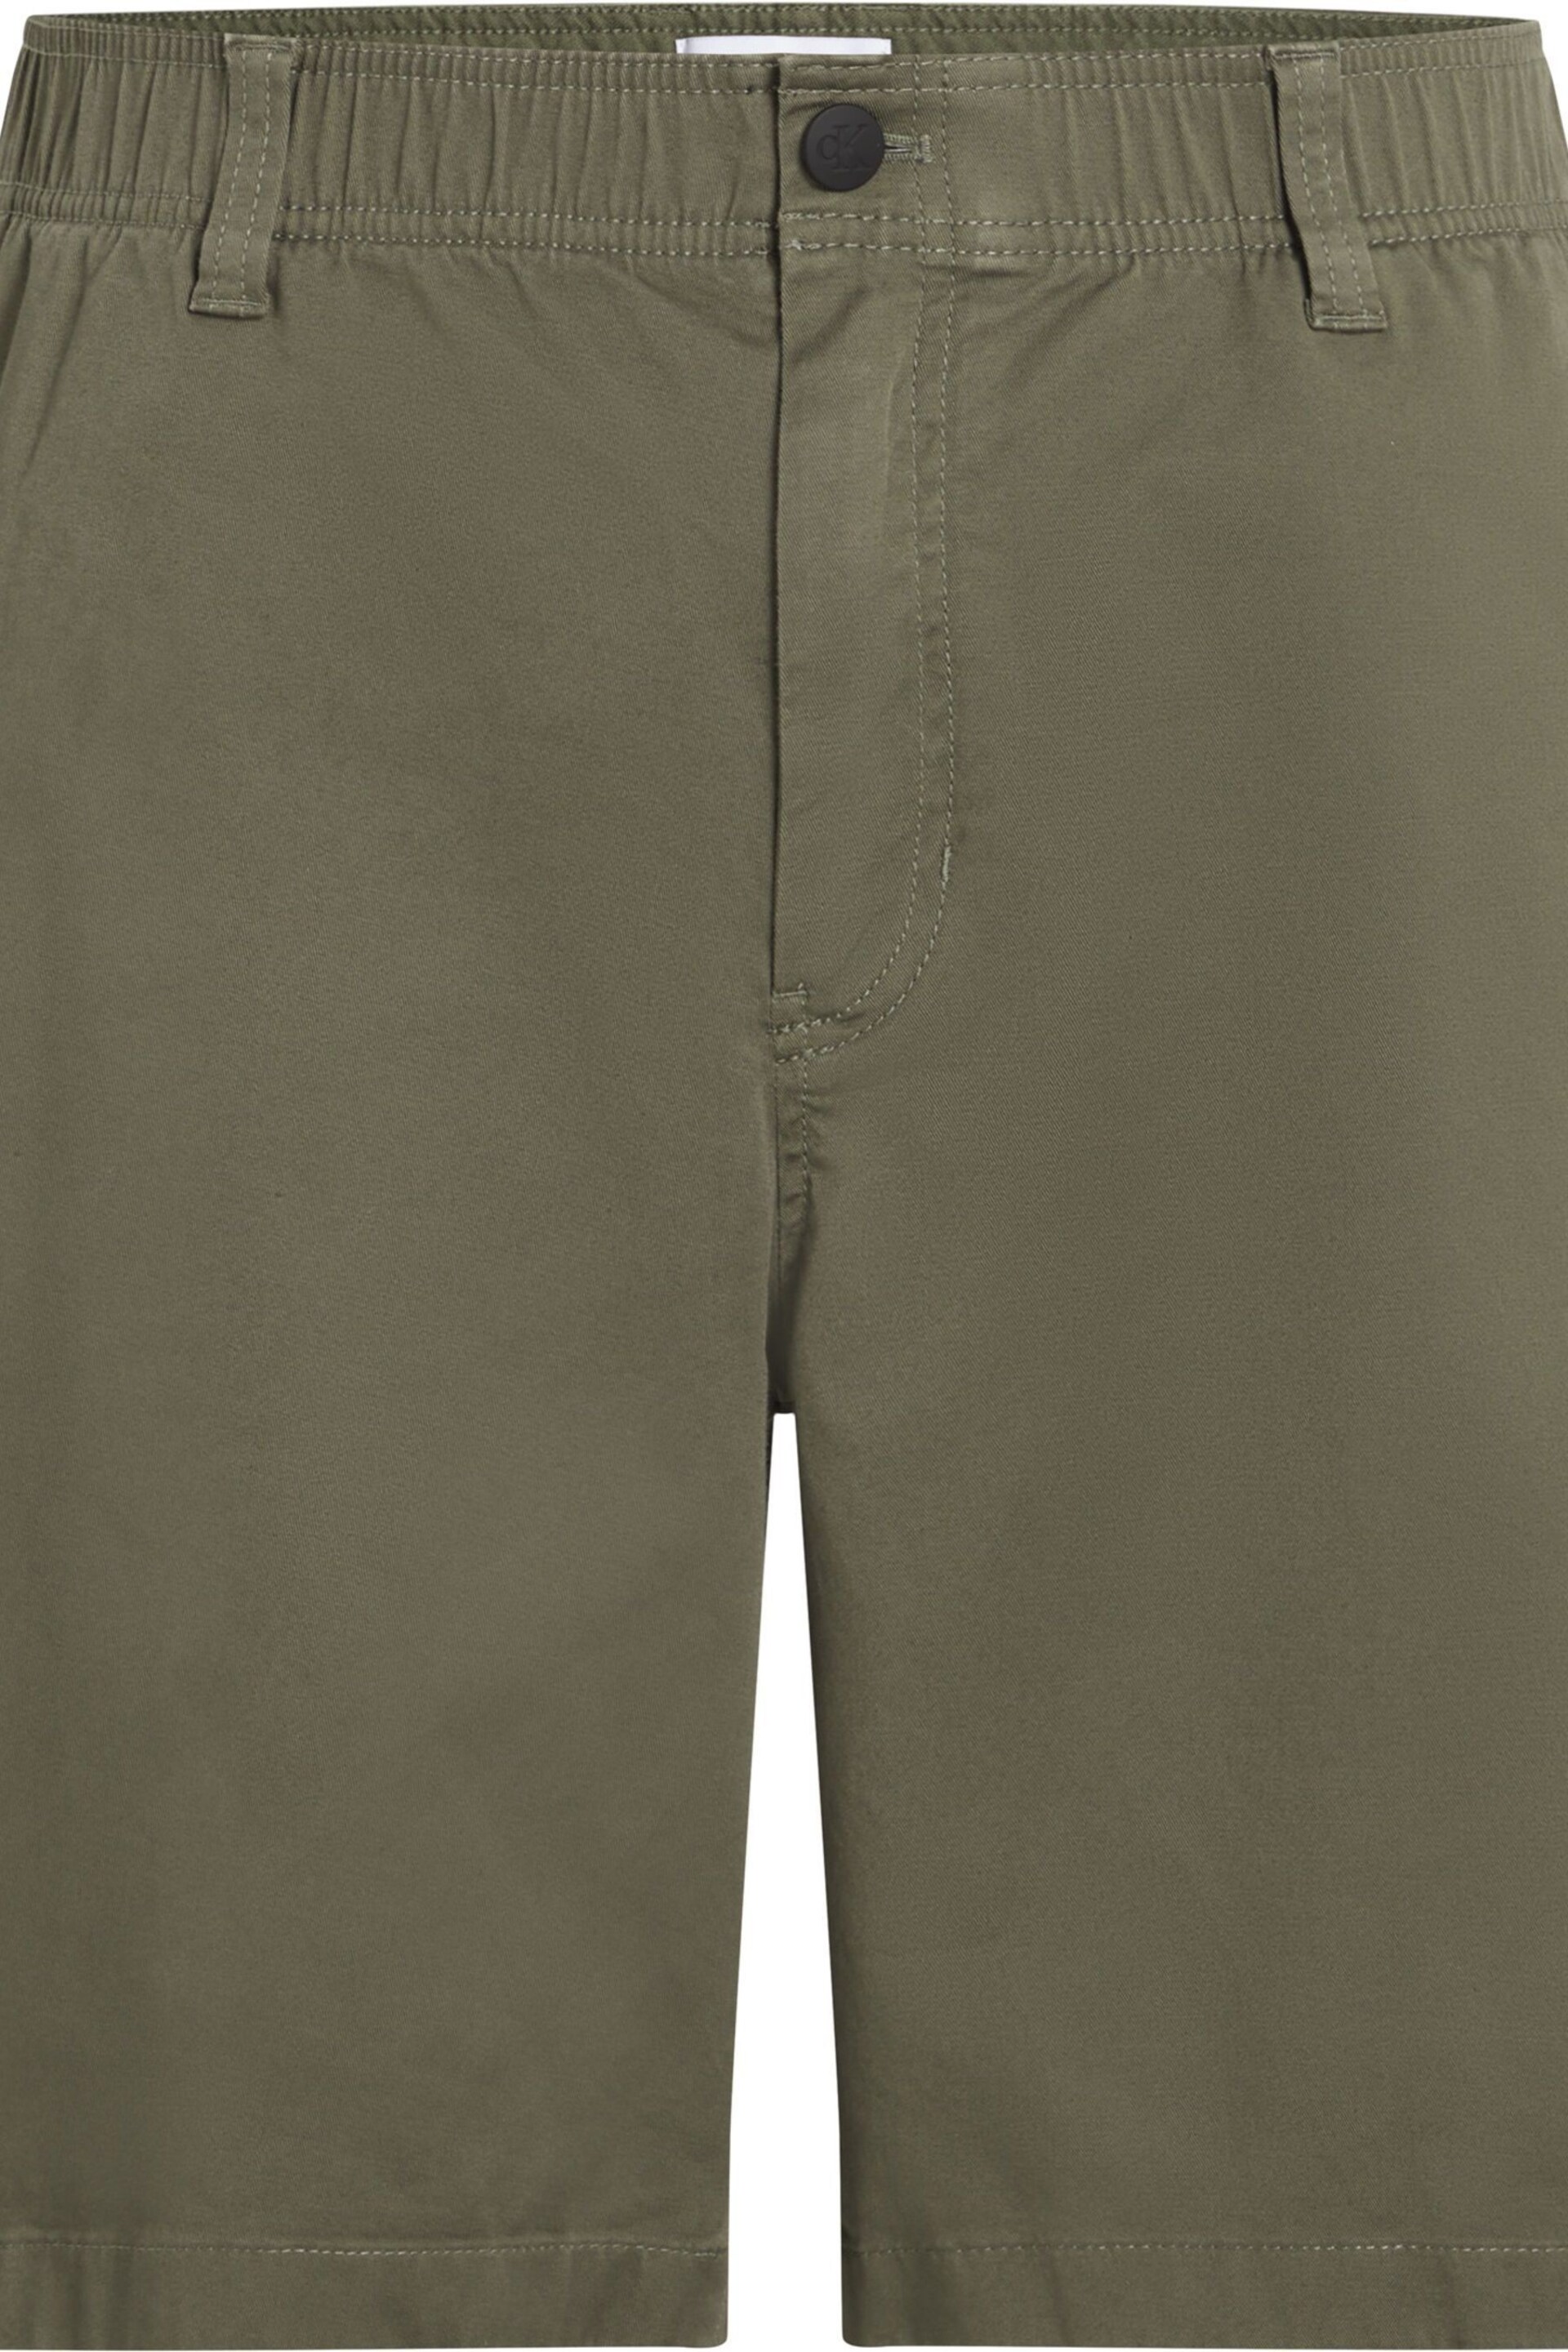 Calvin Klein Green Cargo Woven Shorts - Image 4 of 6